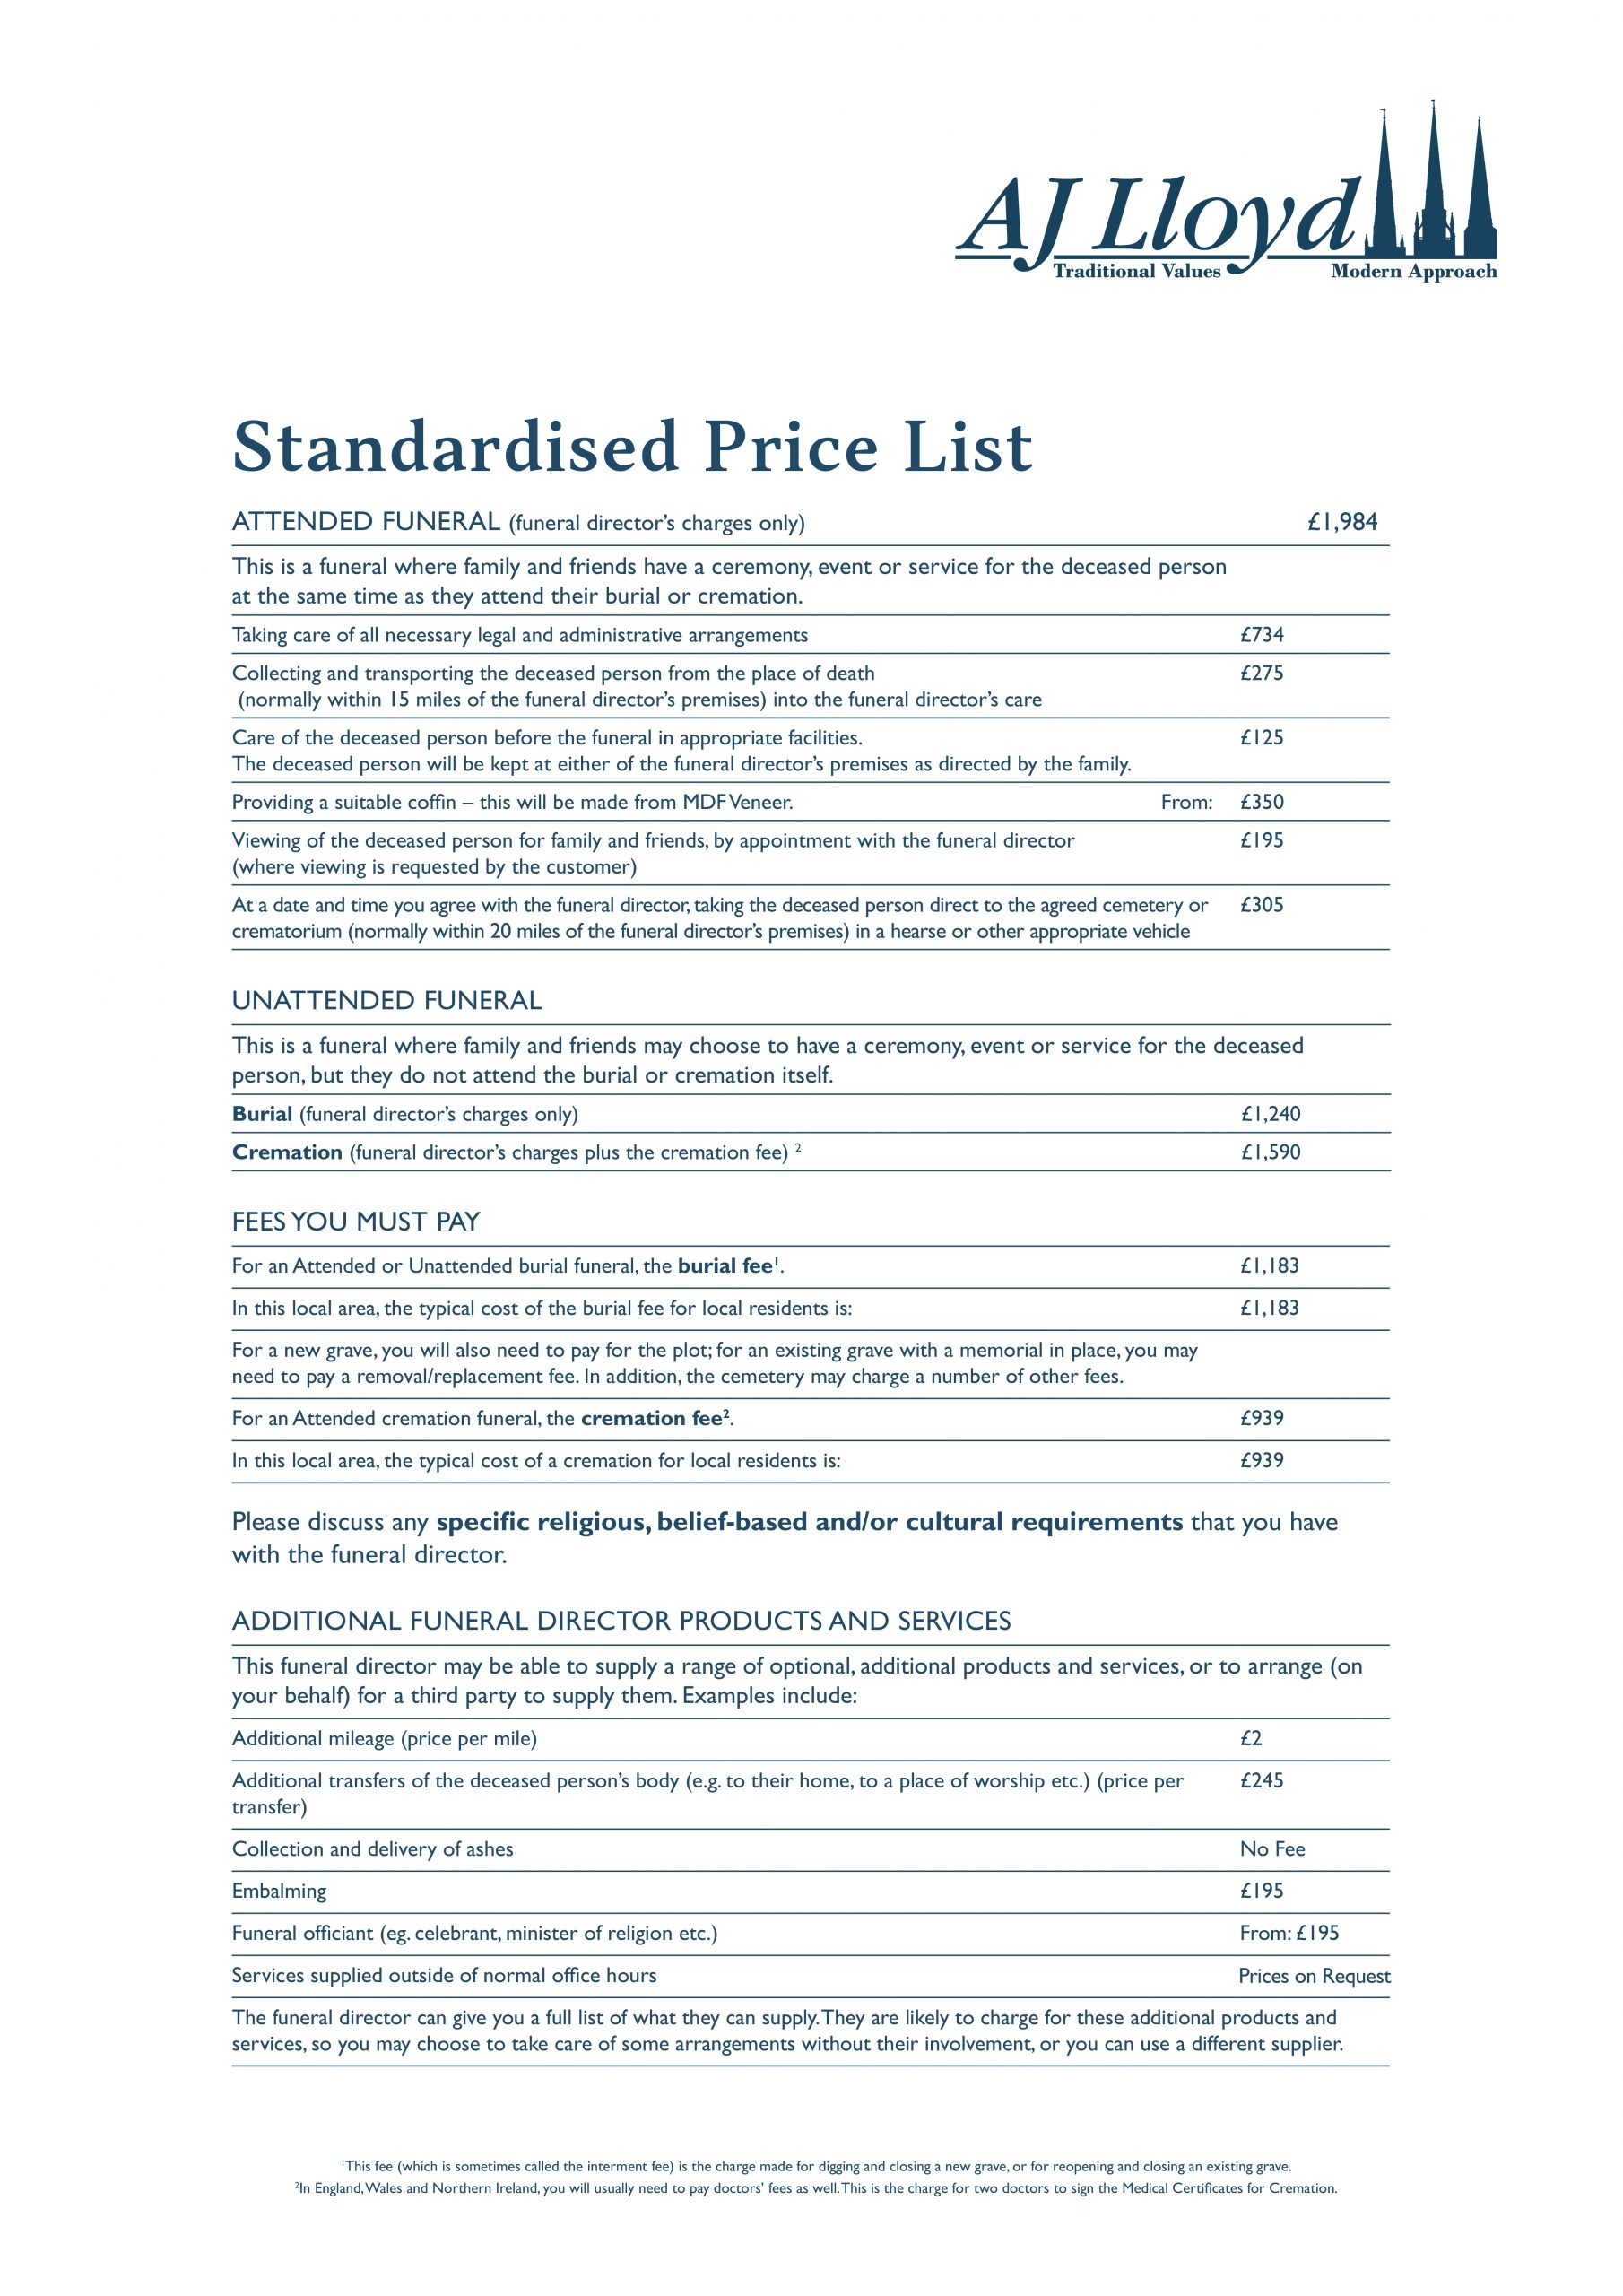 AJ Lloyds Standardised Price List Image